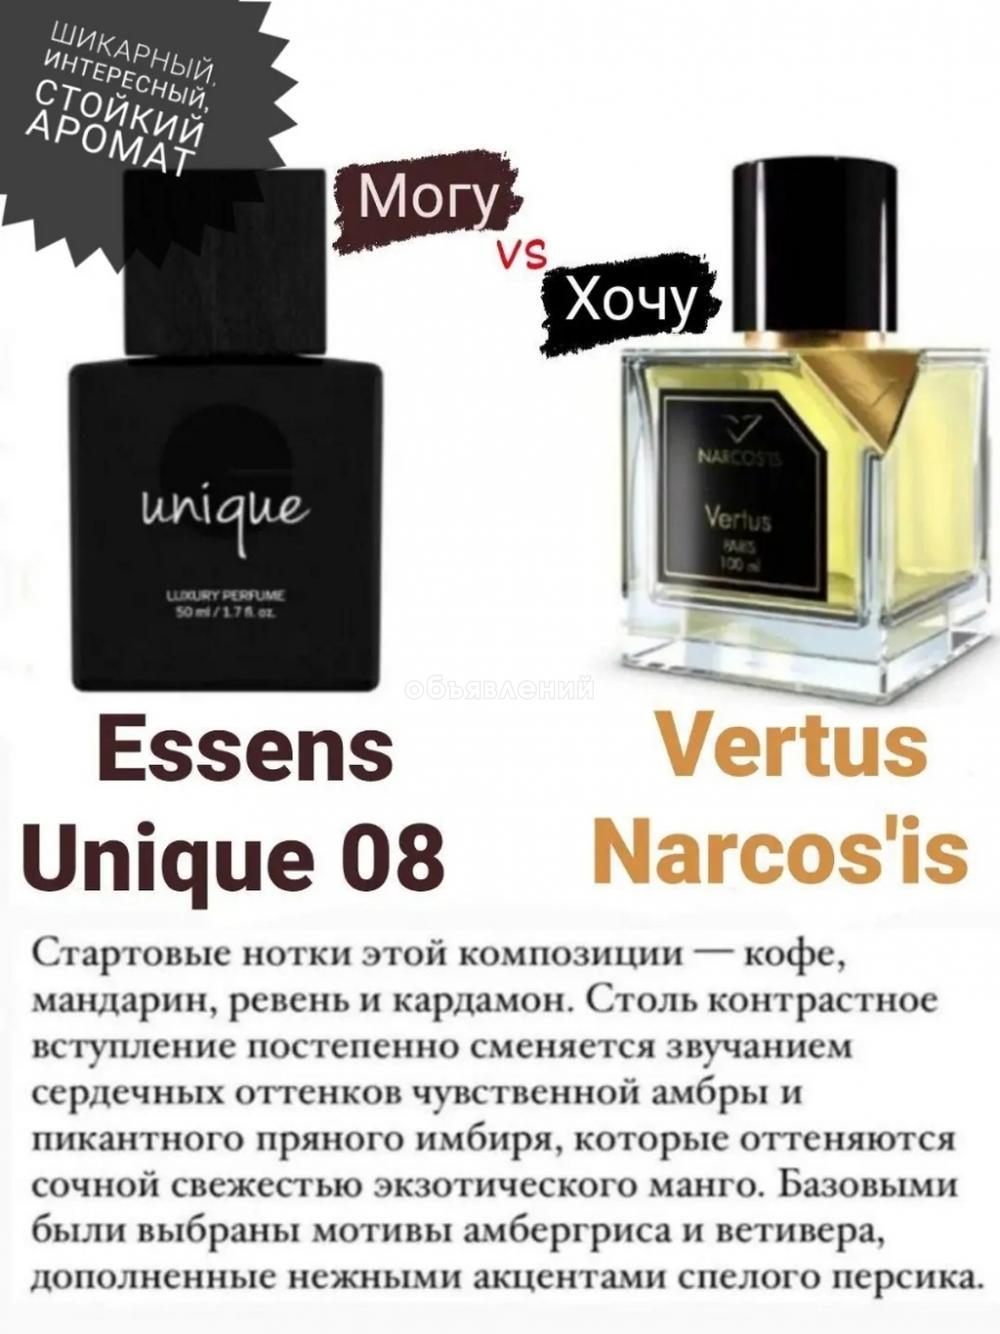 Продаю шикарные духи Essens Unique 08 - эквивалент аромата Vertus / Narcos